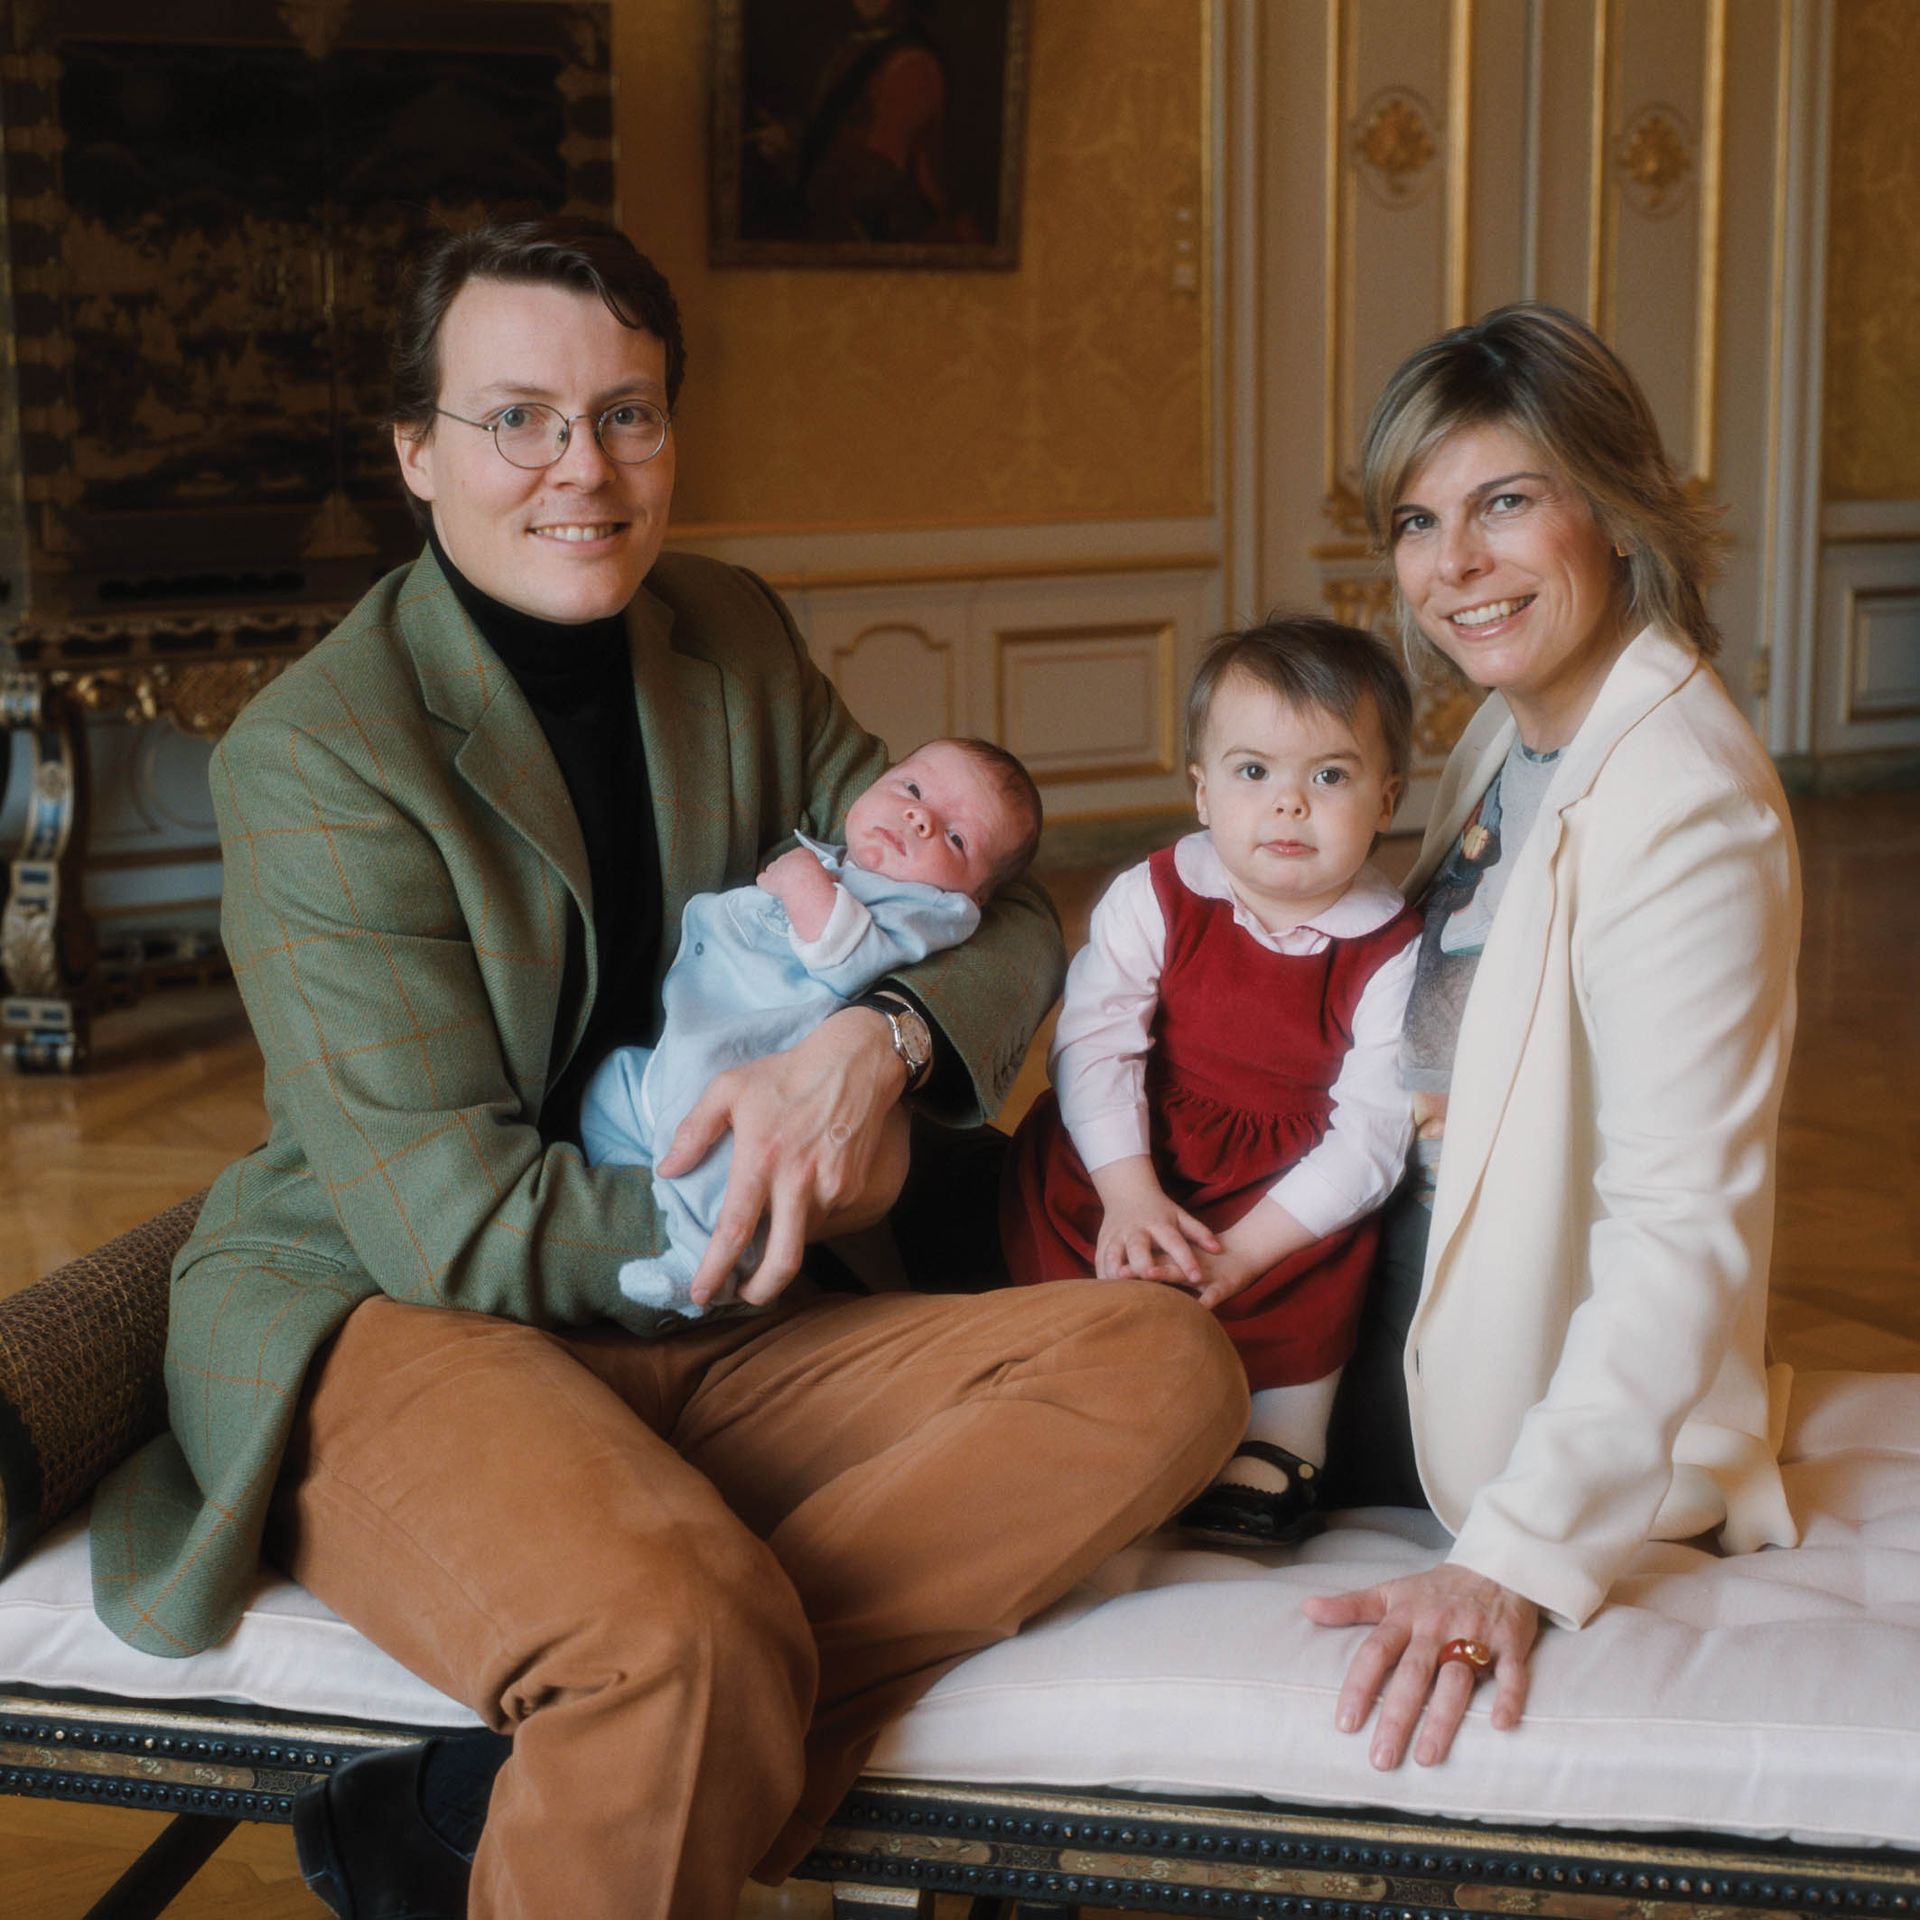 Met z'n viertjes op de foto, kort na de geboorte van zoon Claus-Casimir (april 2004).